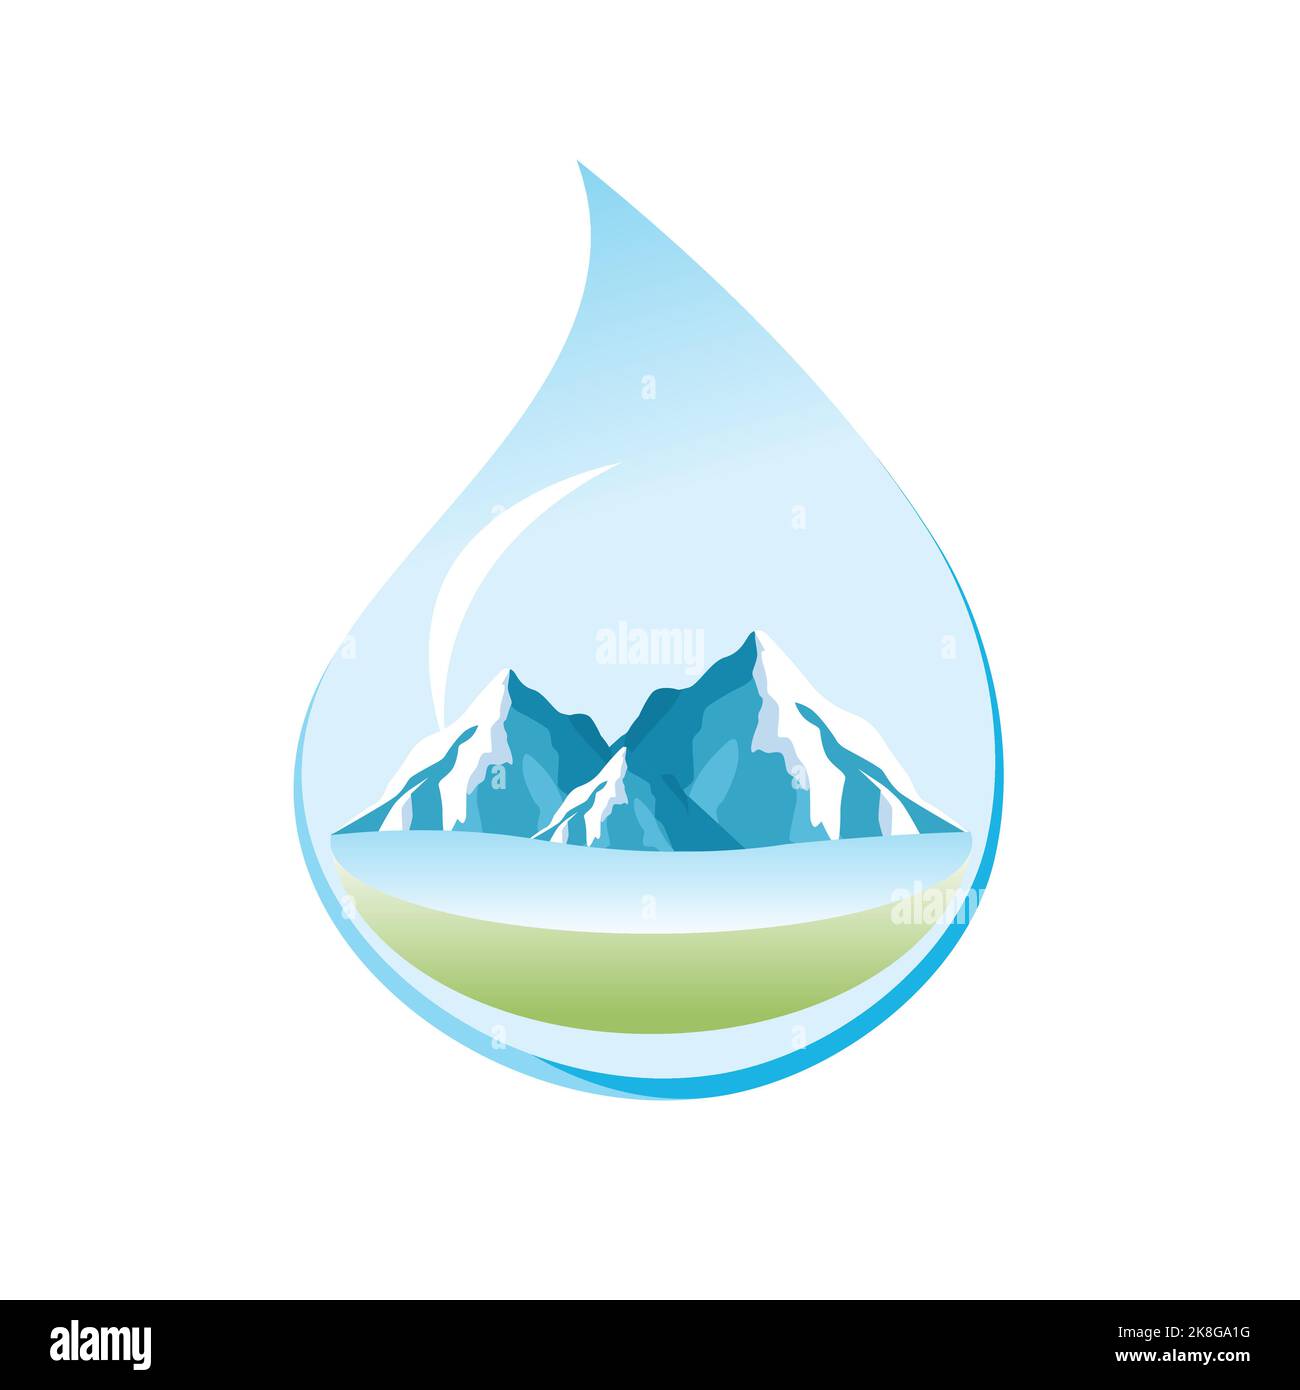 Mineralwasser Logo Konzept Vektor Stock Vektor